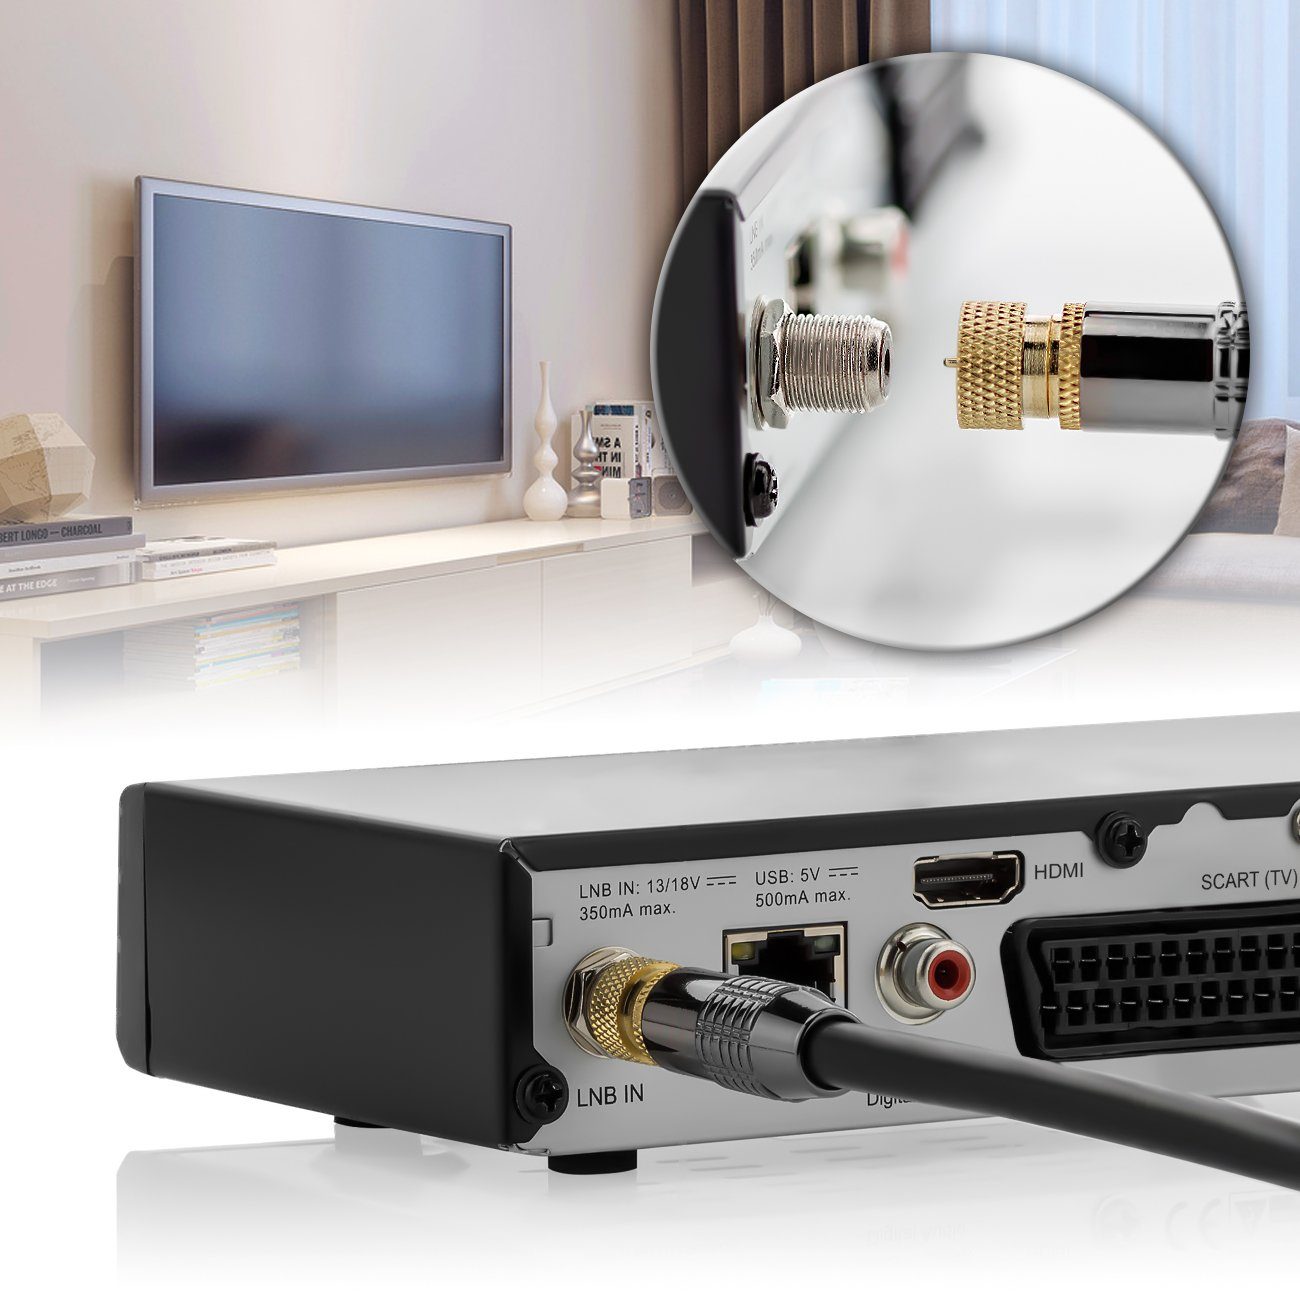 F-Stecker HDTV Antennenkabel deleyCON deleyCON - Schwarz zu 3m - SAT-Kabel SAT F-Stecker